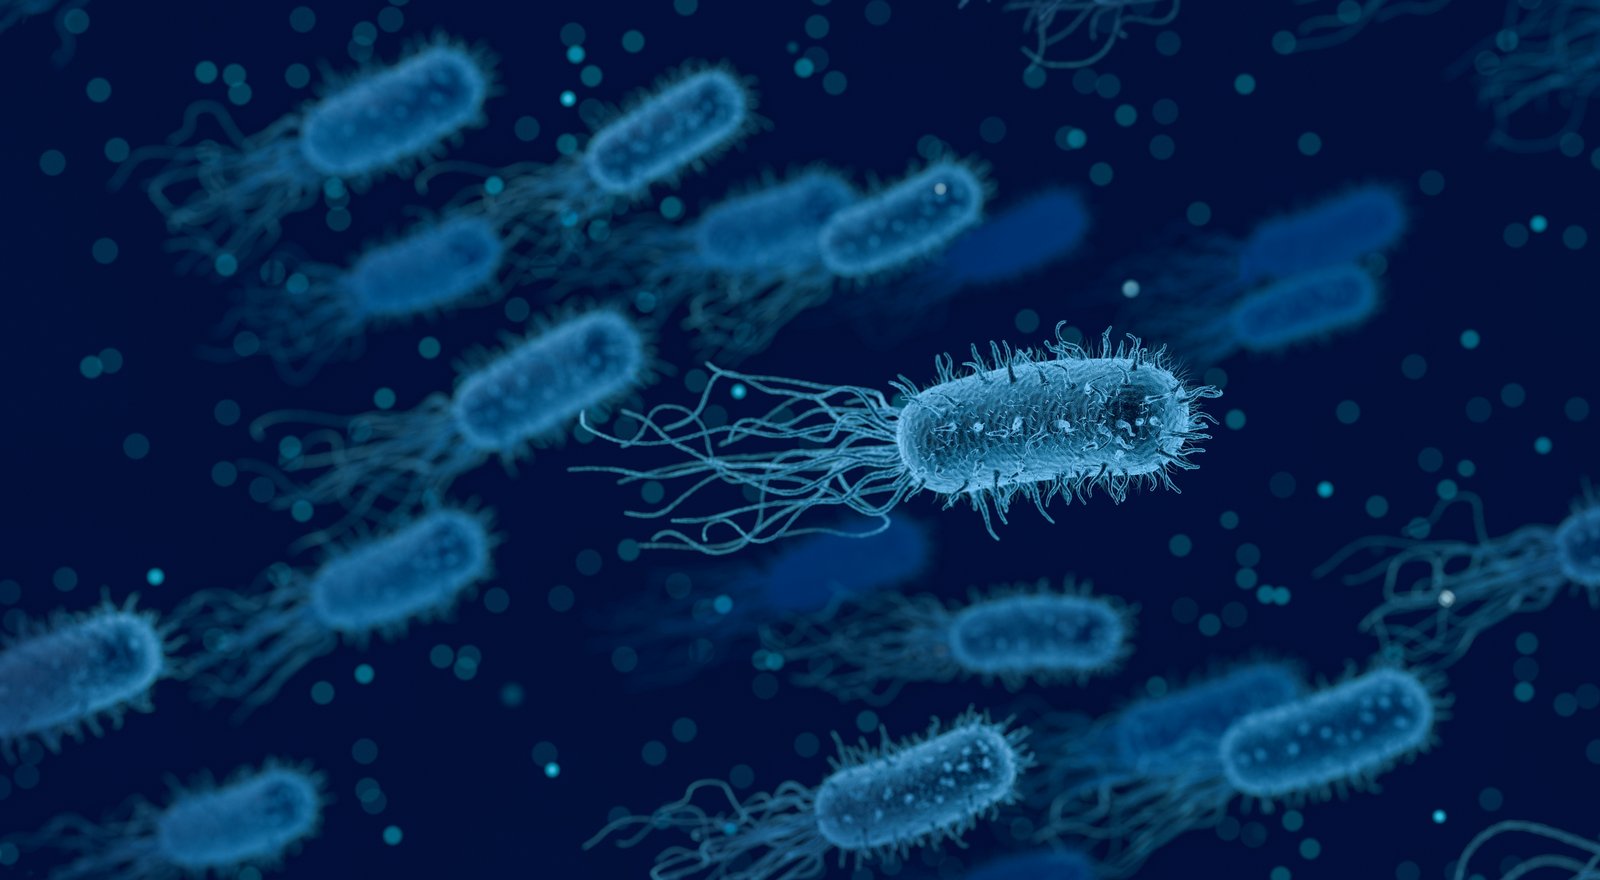 La bactérie, symbole des maladies sexuellement transmissibles